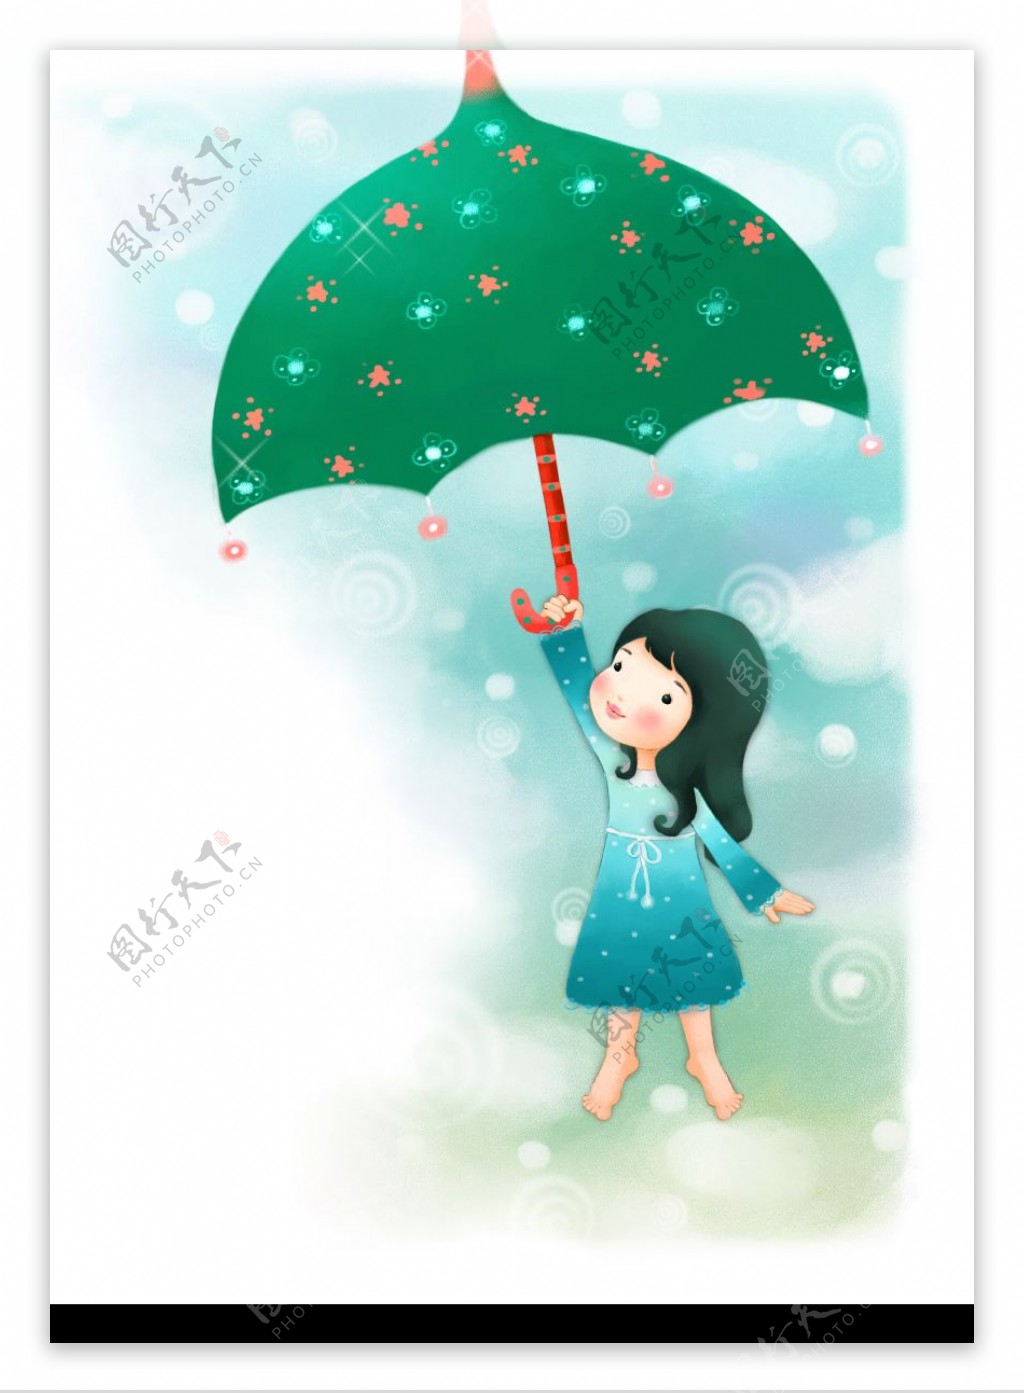 撑伞的小女孩图片